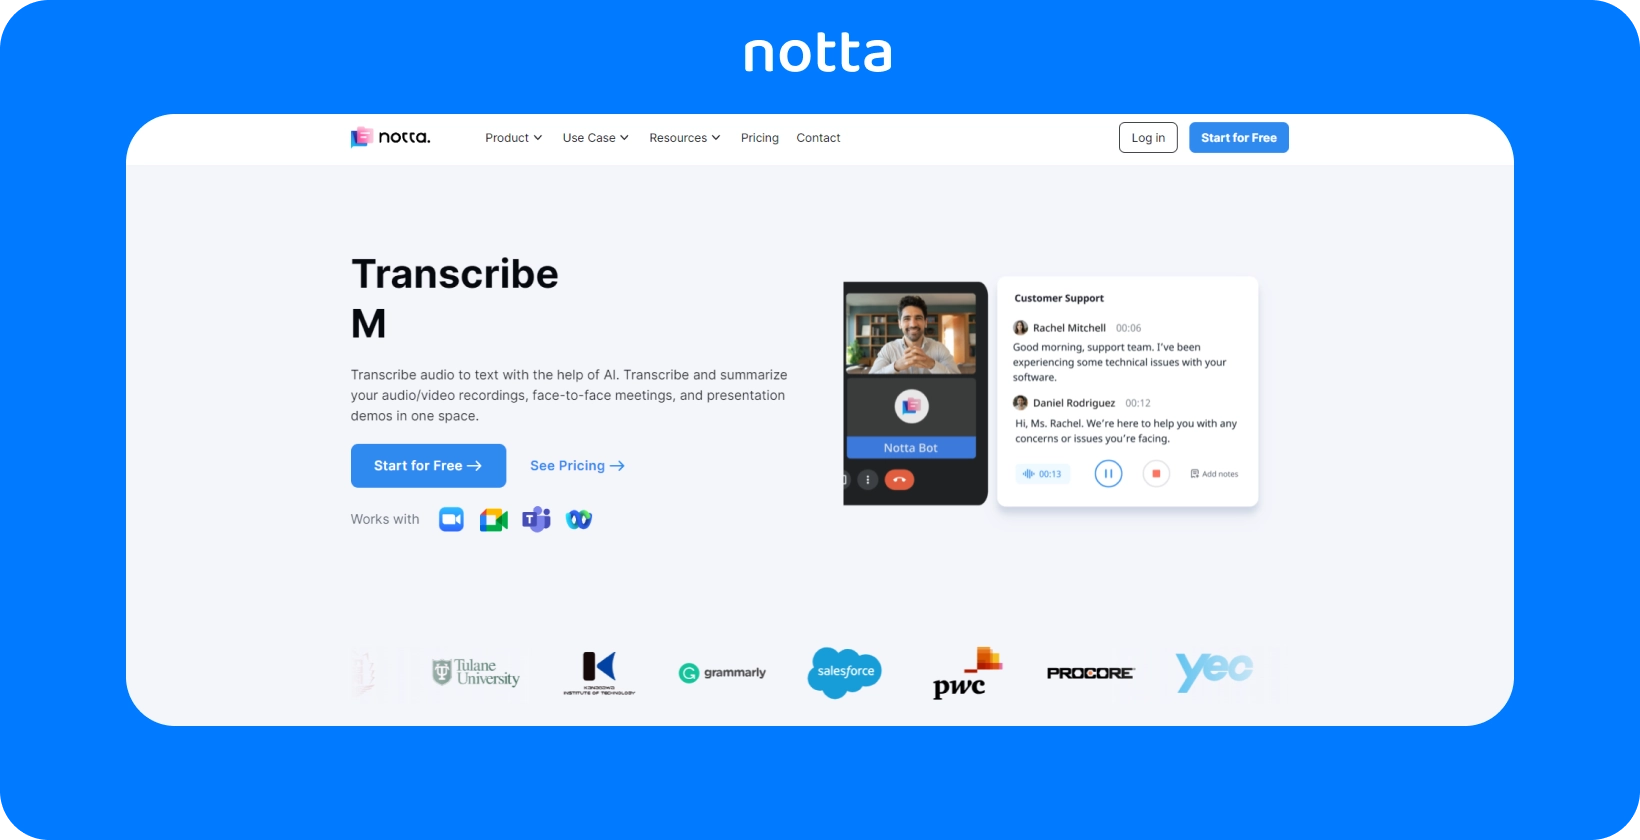 หน้าเว็บของ Notta ที่แสดงการถอดเสียงที่ขับเคลื่อนด้วย AI สําหรับการประชุมทางเสียงและวิดีโอด้วยอินเทอร์เฟซที่ชัดเจนและเน้นผู้ใช้เป็นศูนย์กลาง